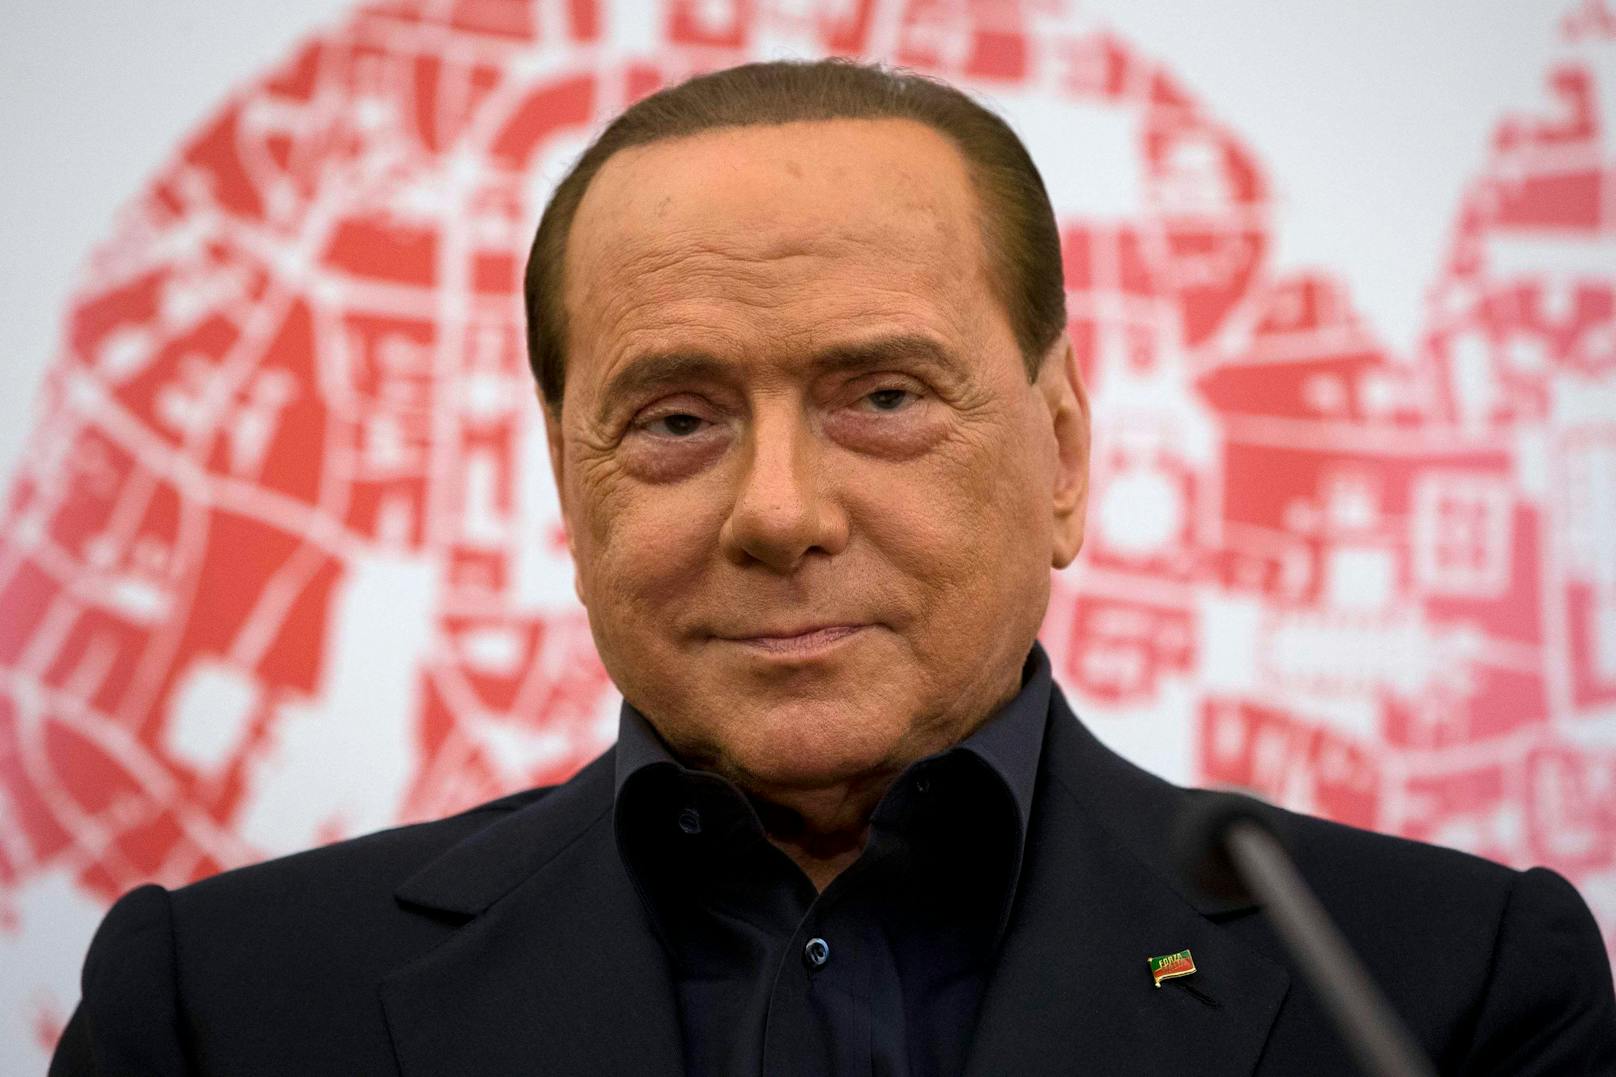 Wie mehrere italienische Zeitungen übereinstimmend berichten, ist der ehemalige italienische Ministerpräsident Silvio Berlusconi im Alter von 86 Jahren gestorben.